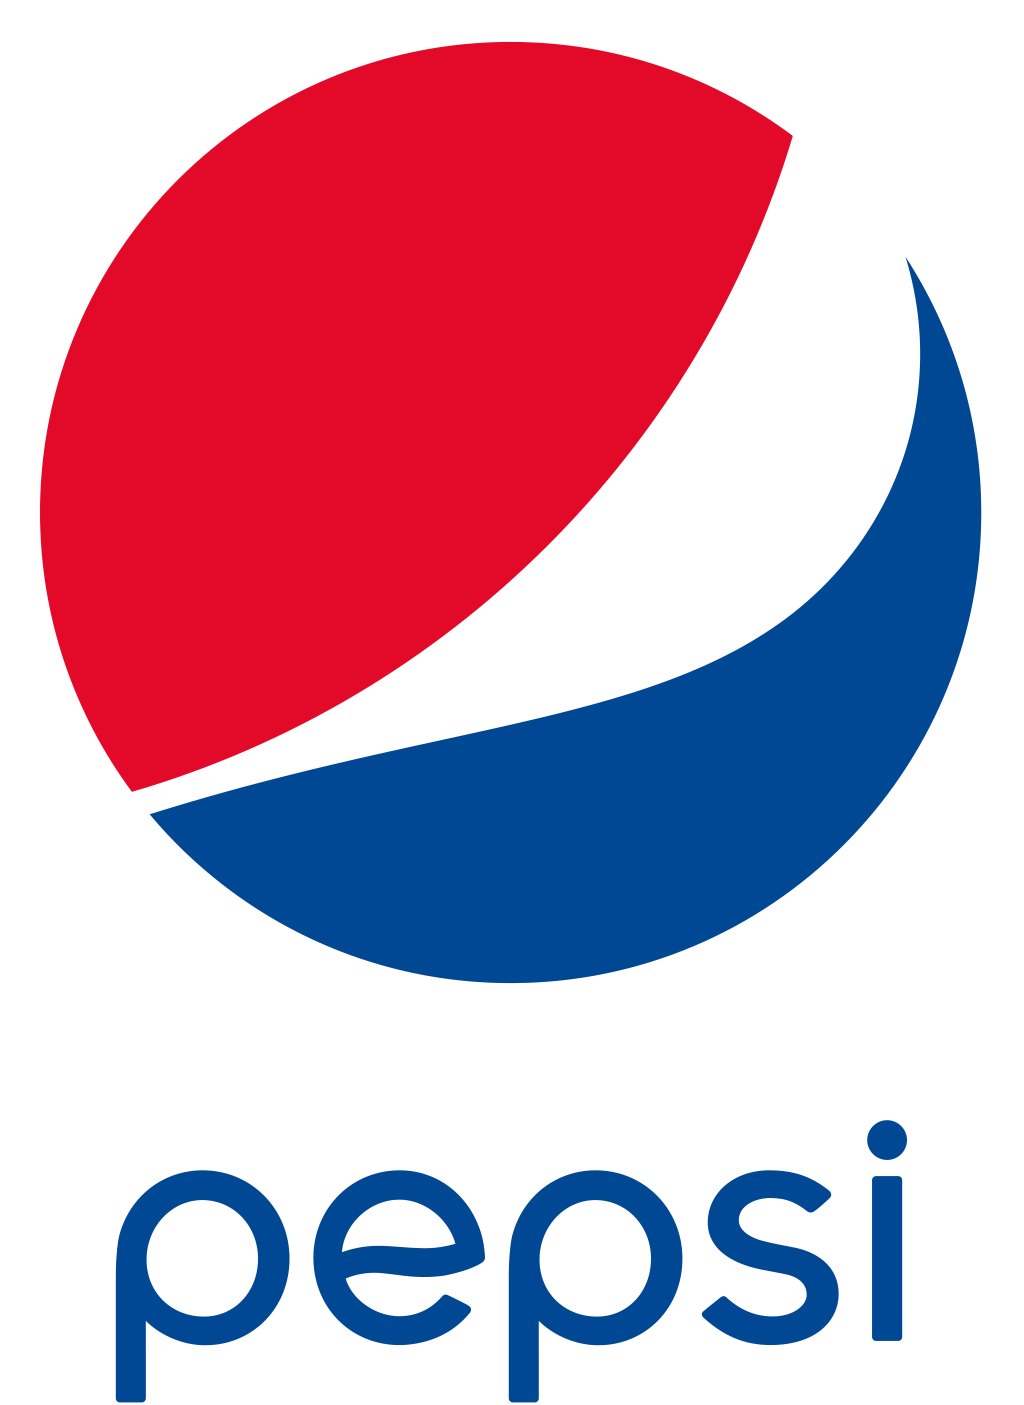 Pepsi logo, symbol, vertical, .png